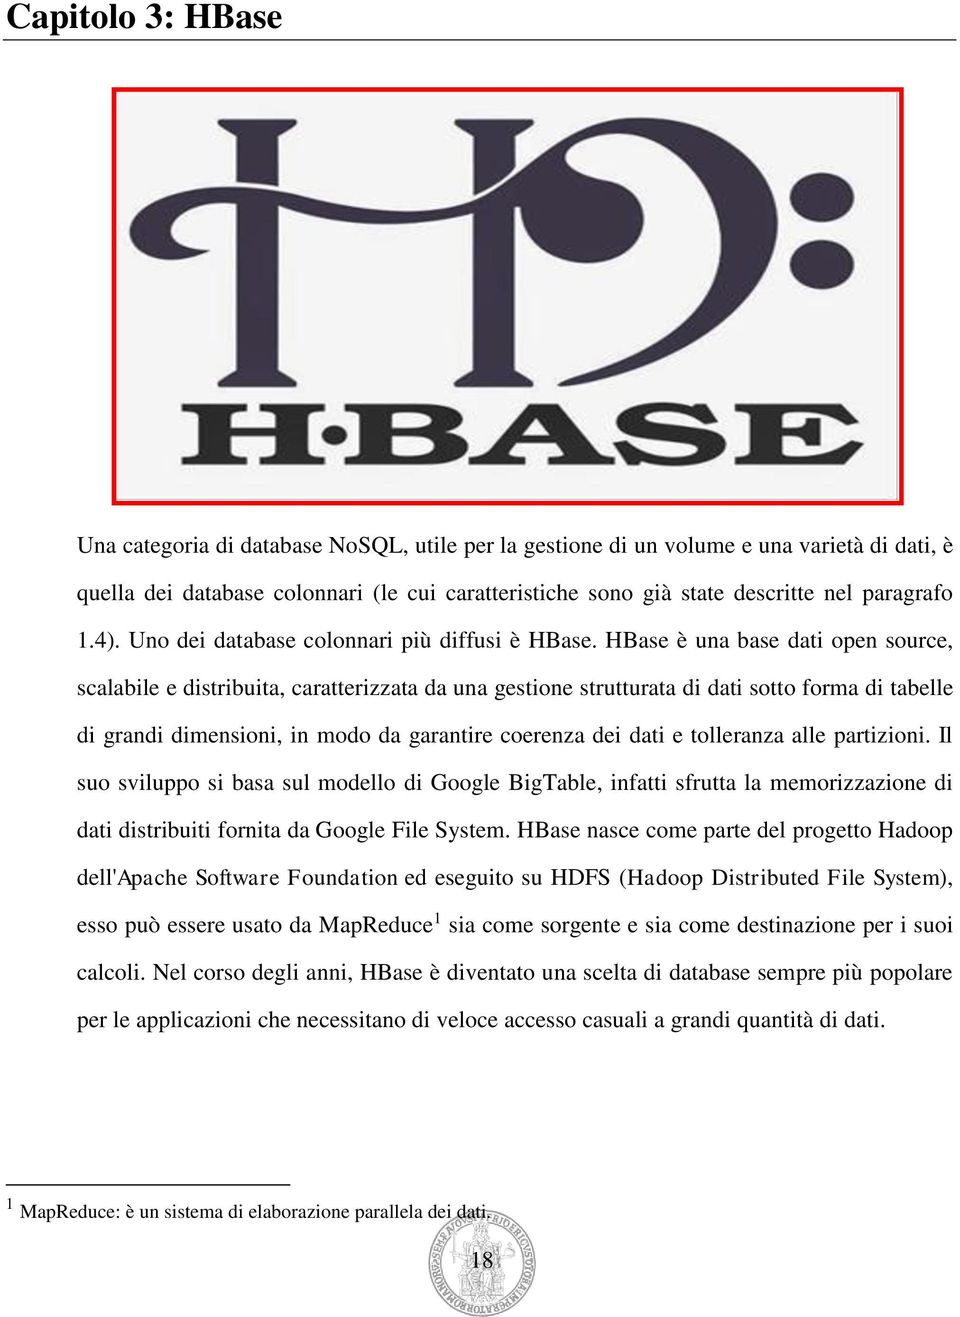 HBase è una base dati open source, scalabile e distribuita, caratterizzata da una gestione strutturata di dati sotto forma di tabelle di grandi dimensioni, in modo da garantire coerenza dei dati e